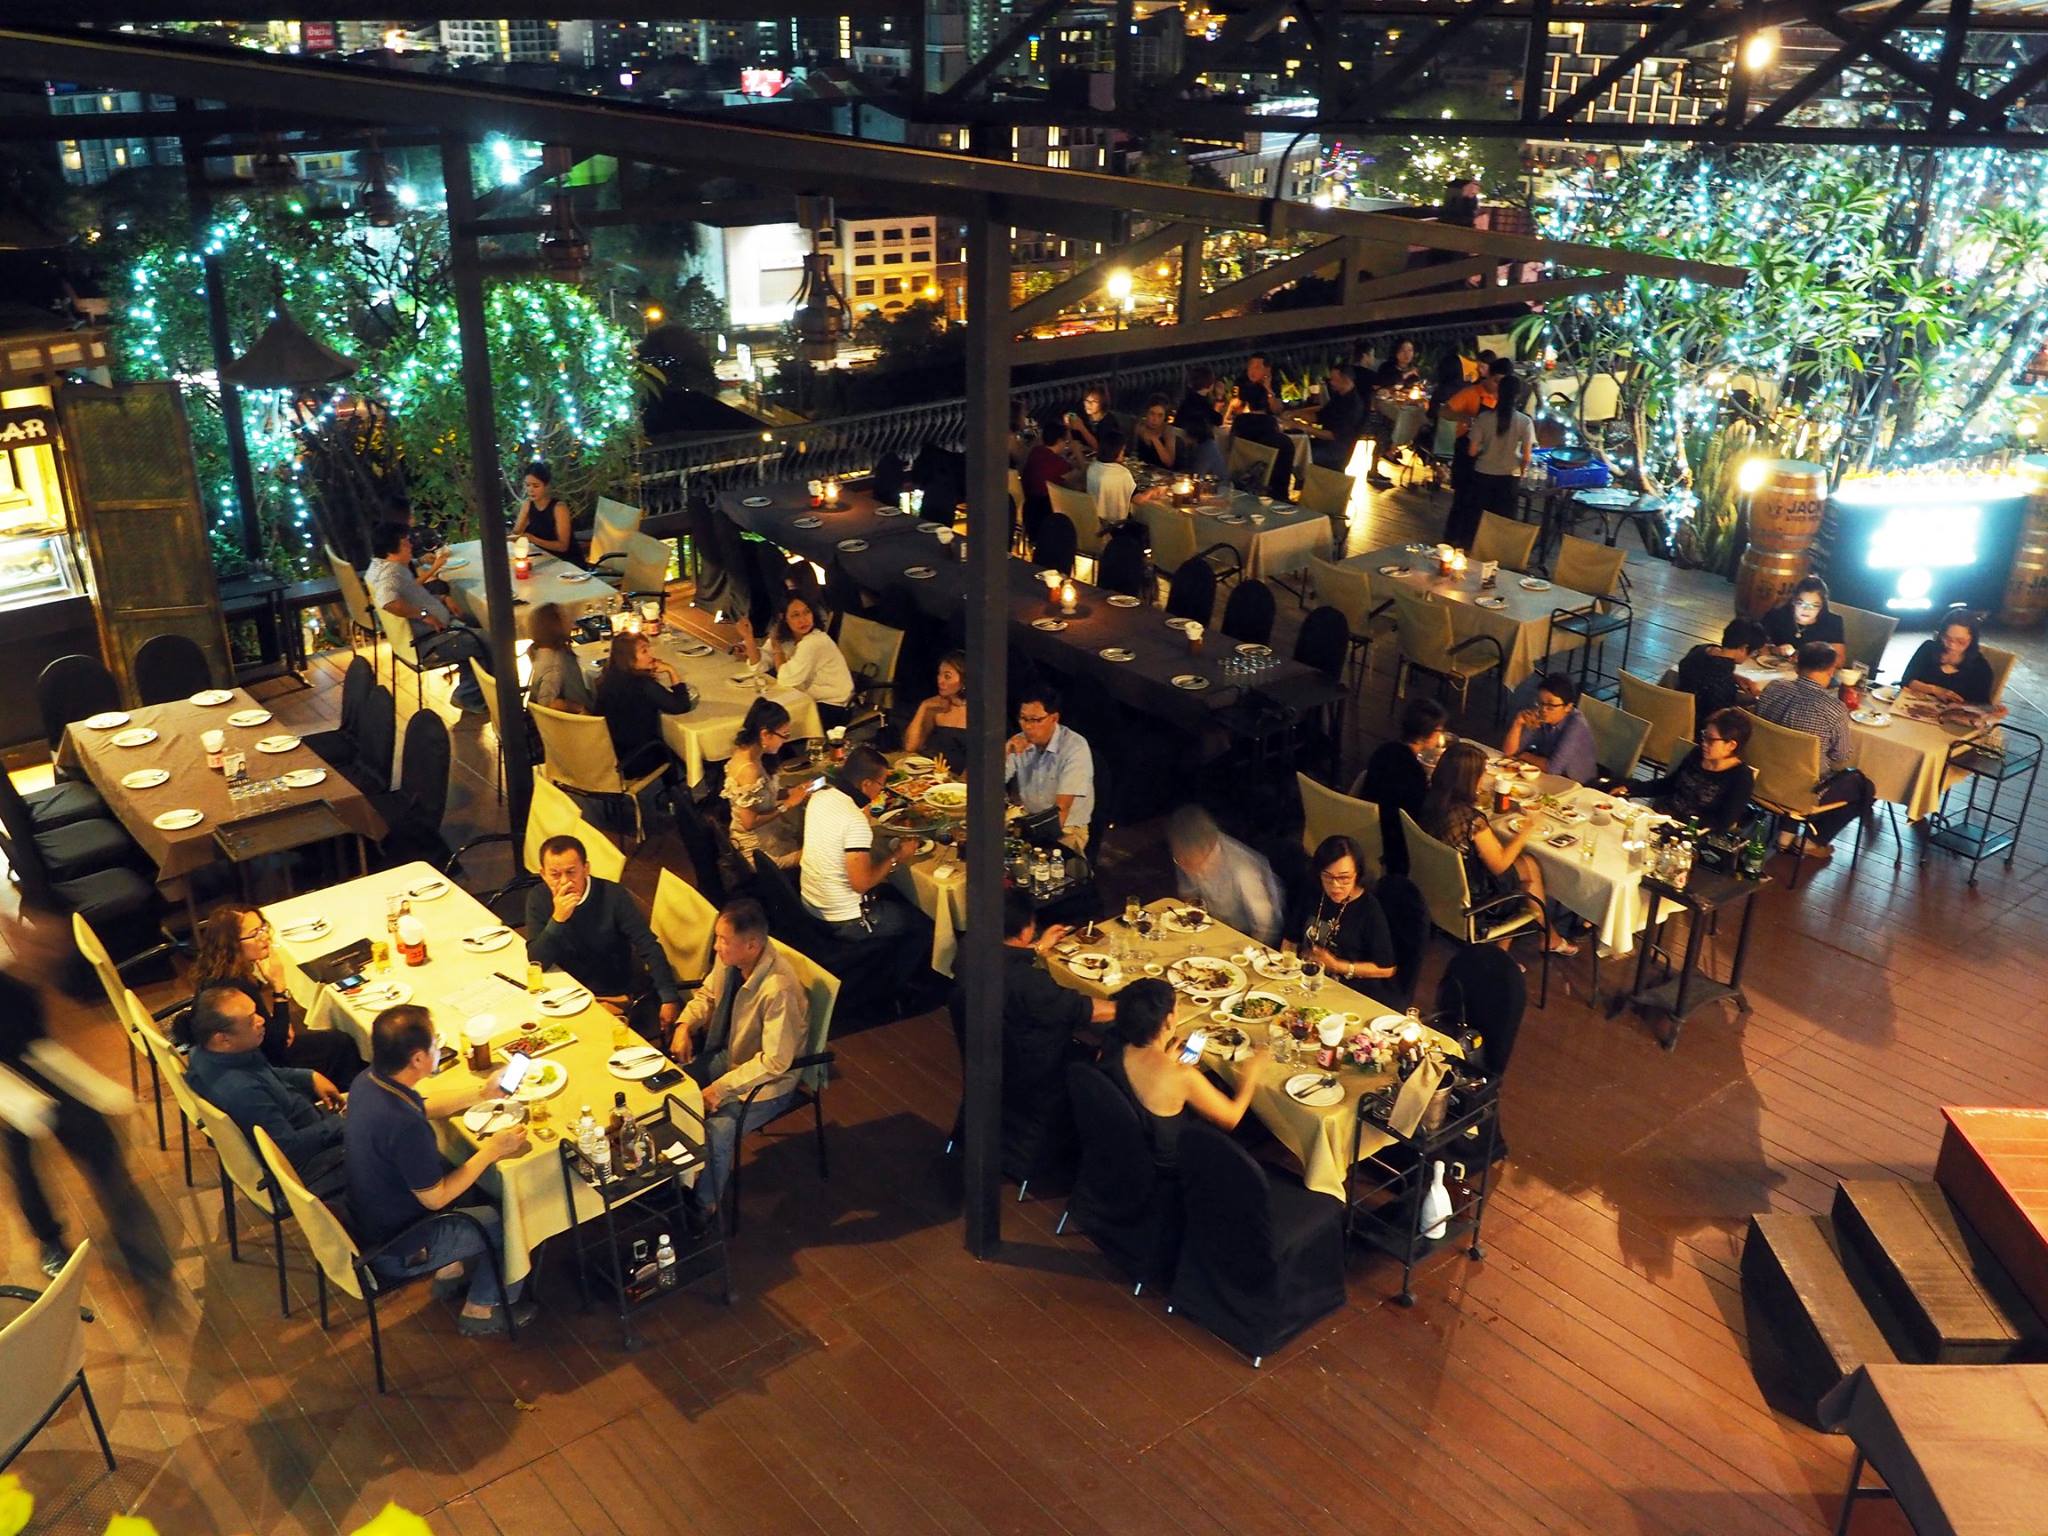 Xanadu Pub & Restaurant (ซานาดู ผับ แอนด์ เรสเตอรองท์) : Chiang Mai (เชียงใหม่)